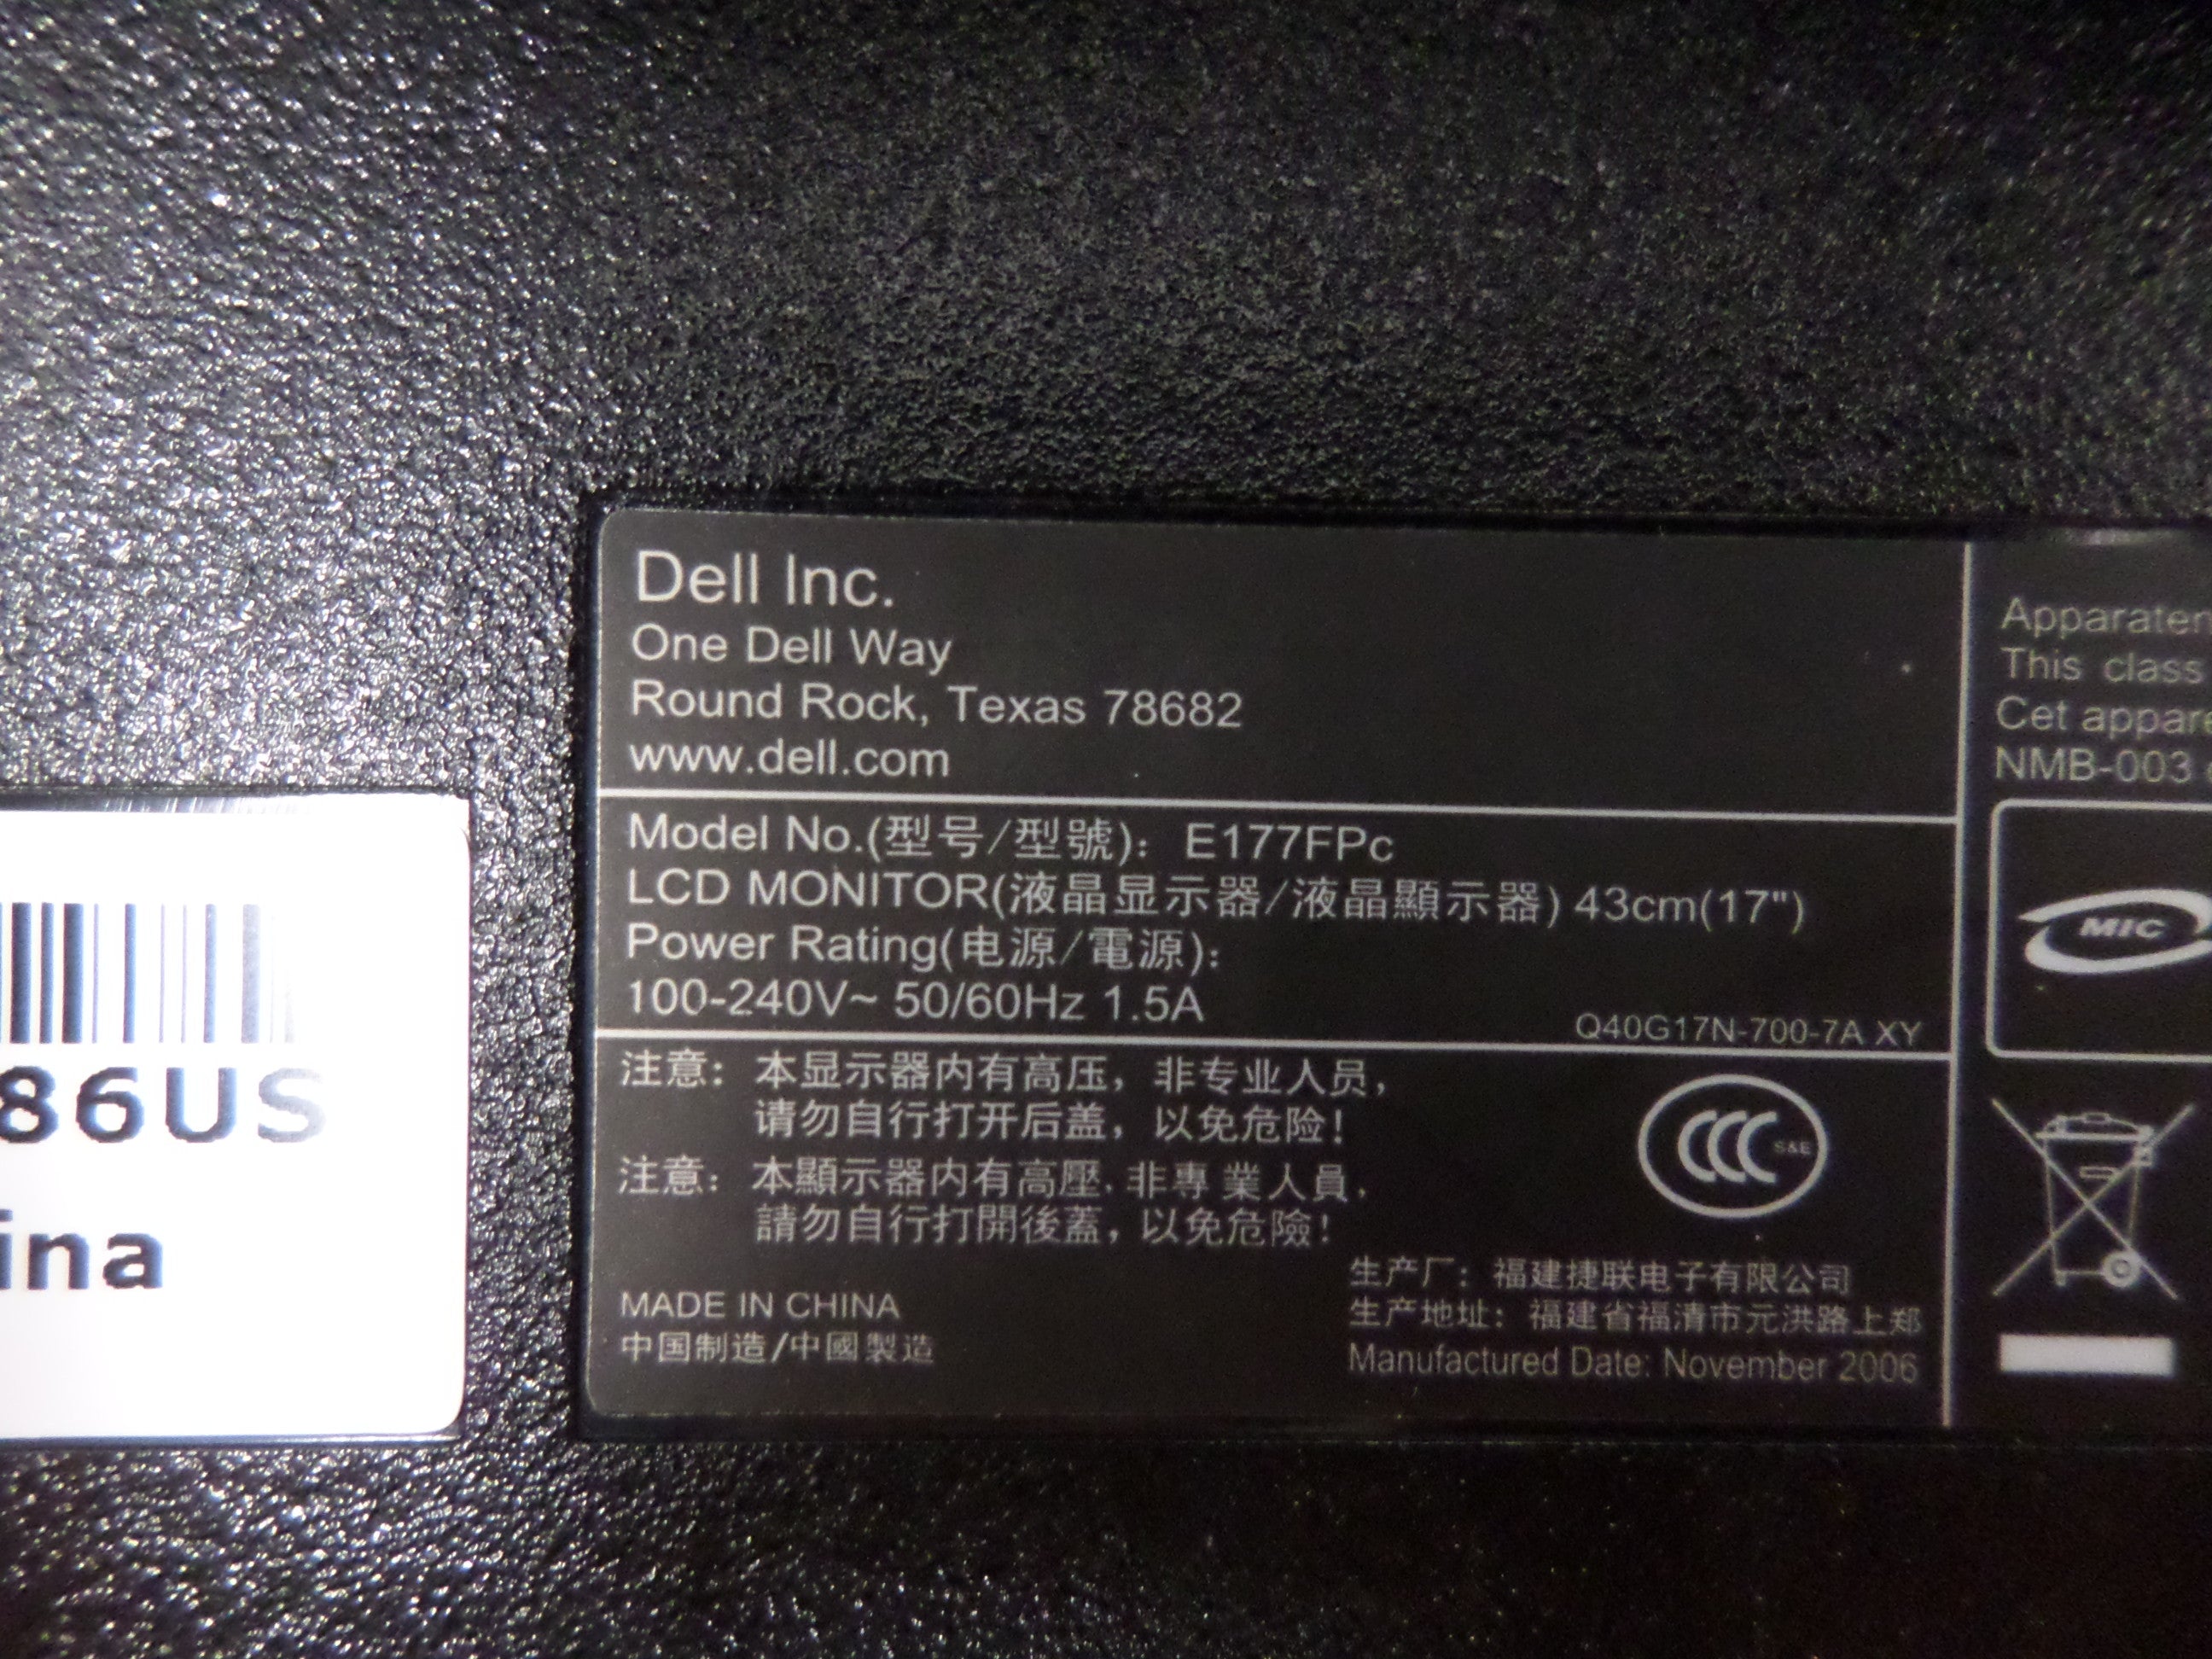 PR25757_0XP279_Dell 17" Color LCD Monitor - Image2